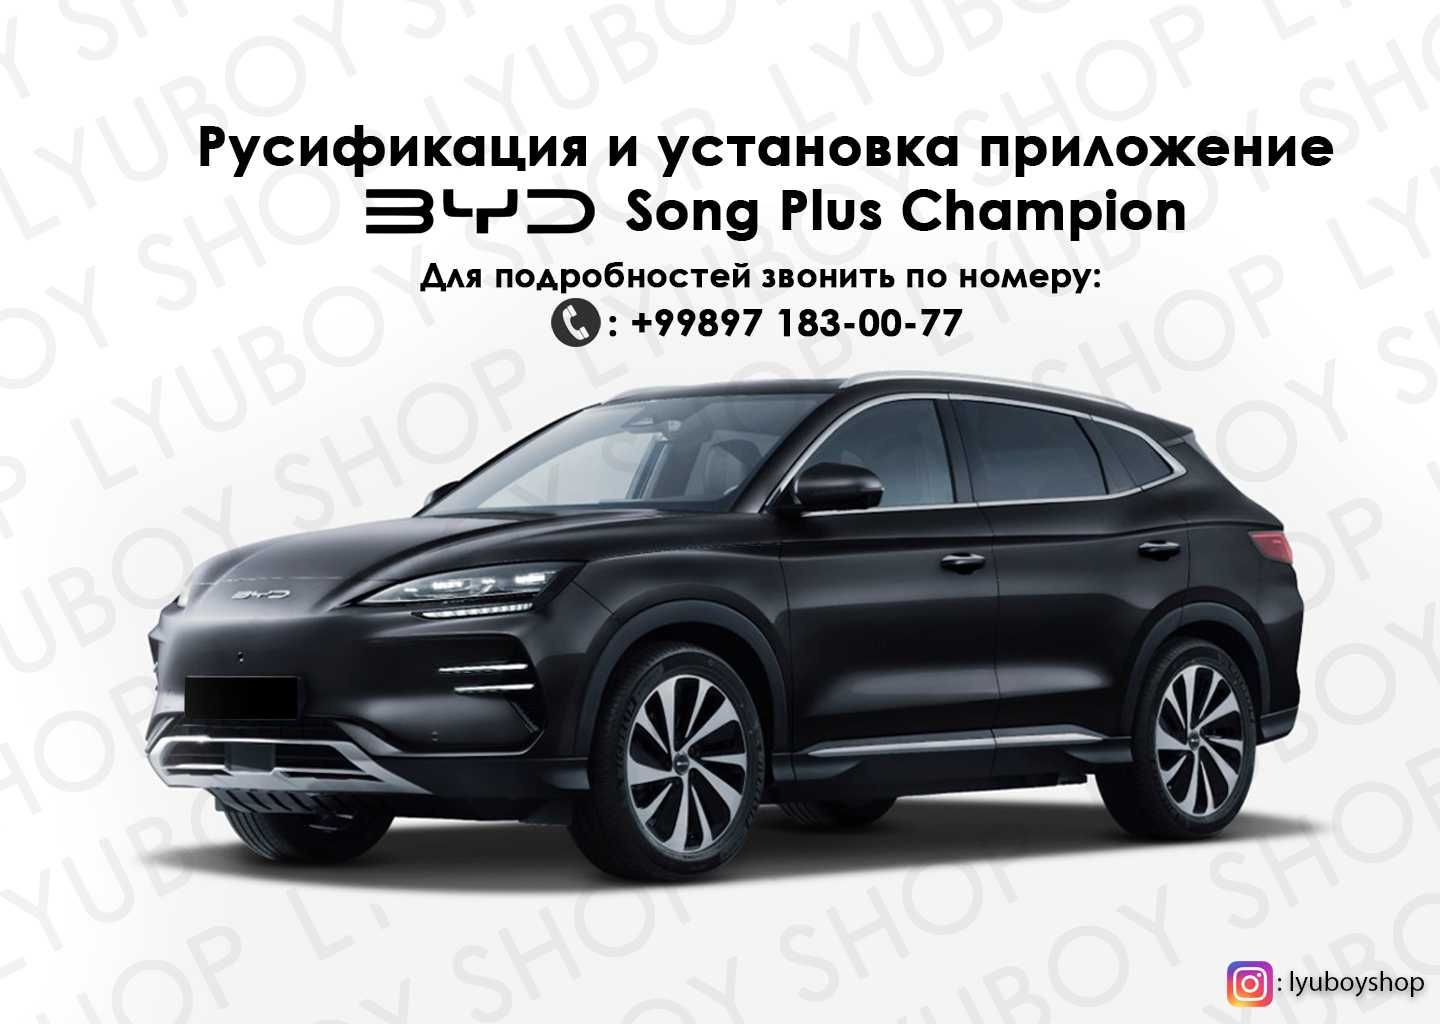 Русификация и установка приложение BYD Song Plus Champion